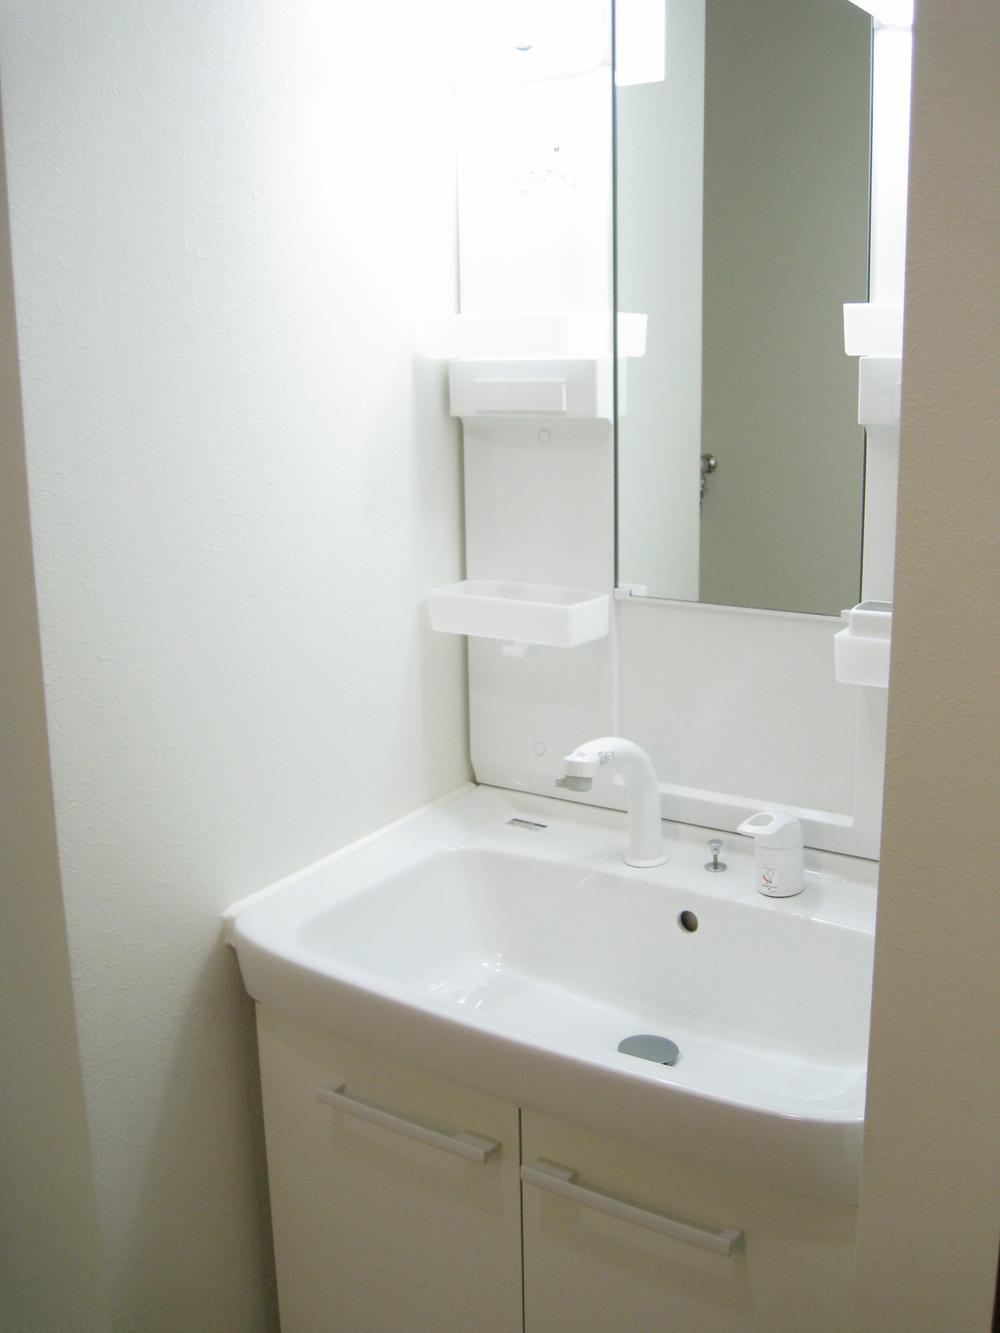 Wash basin, toilet. Indoor (11 May 2013) shooting a new bathroom vanity